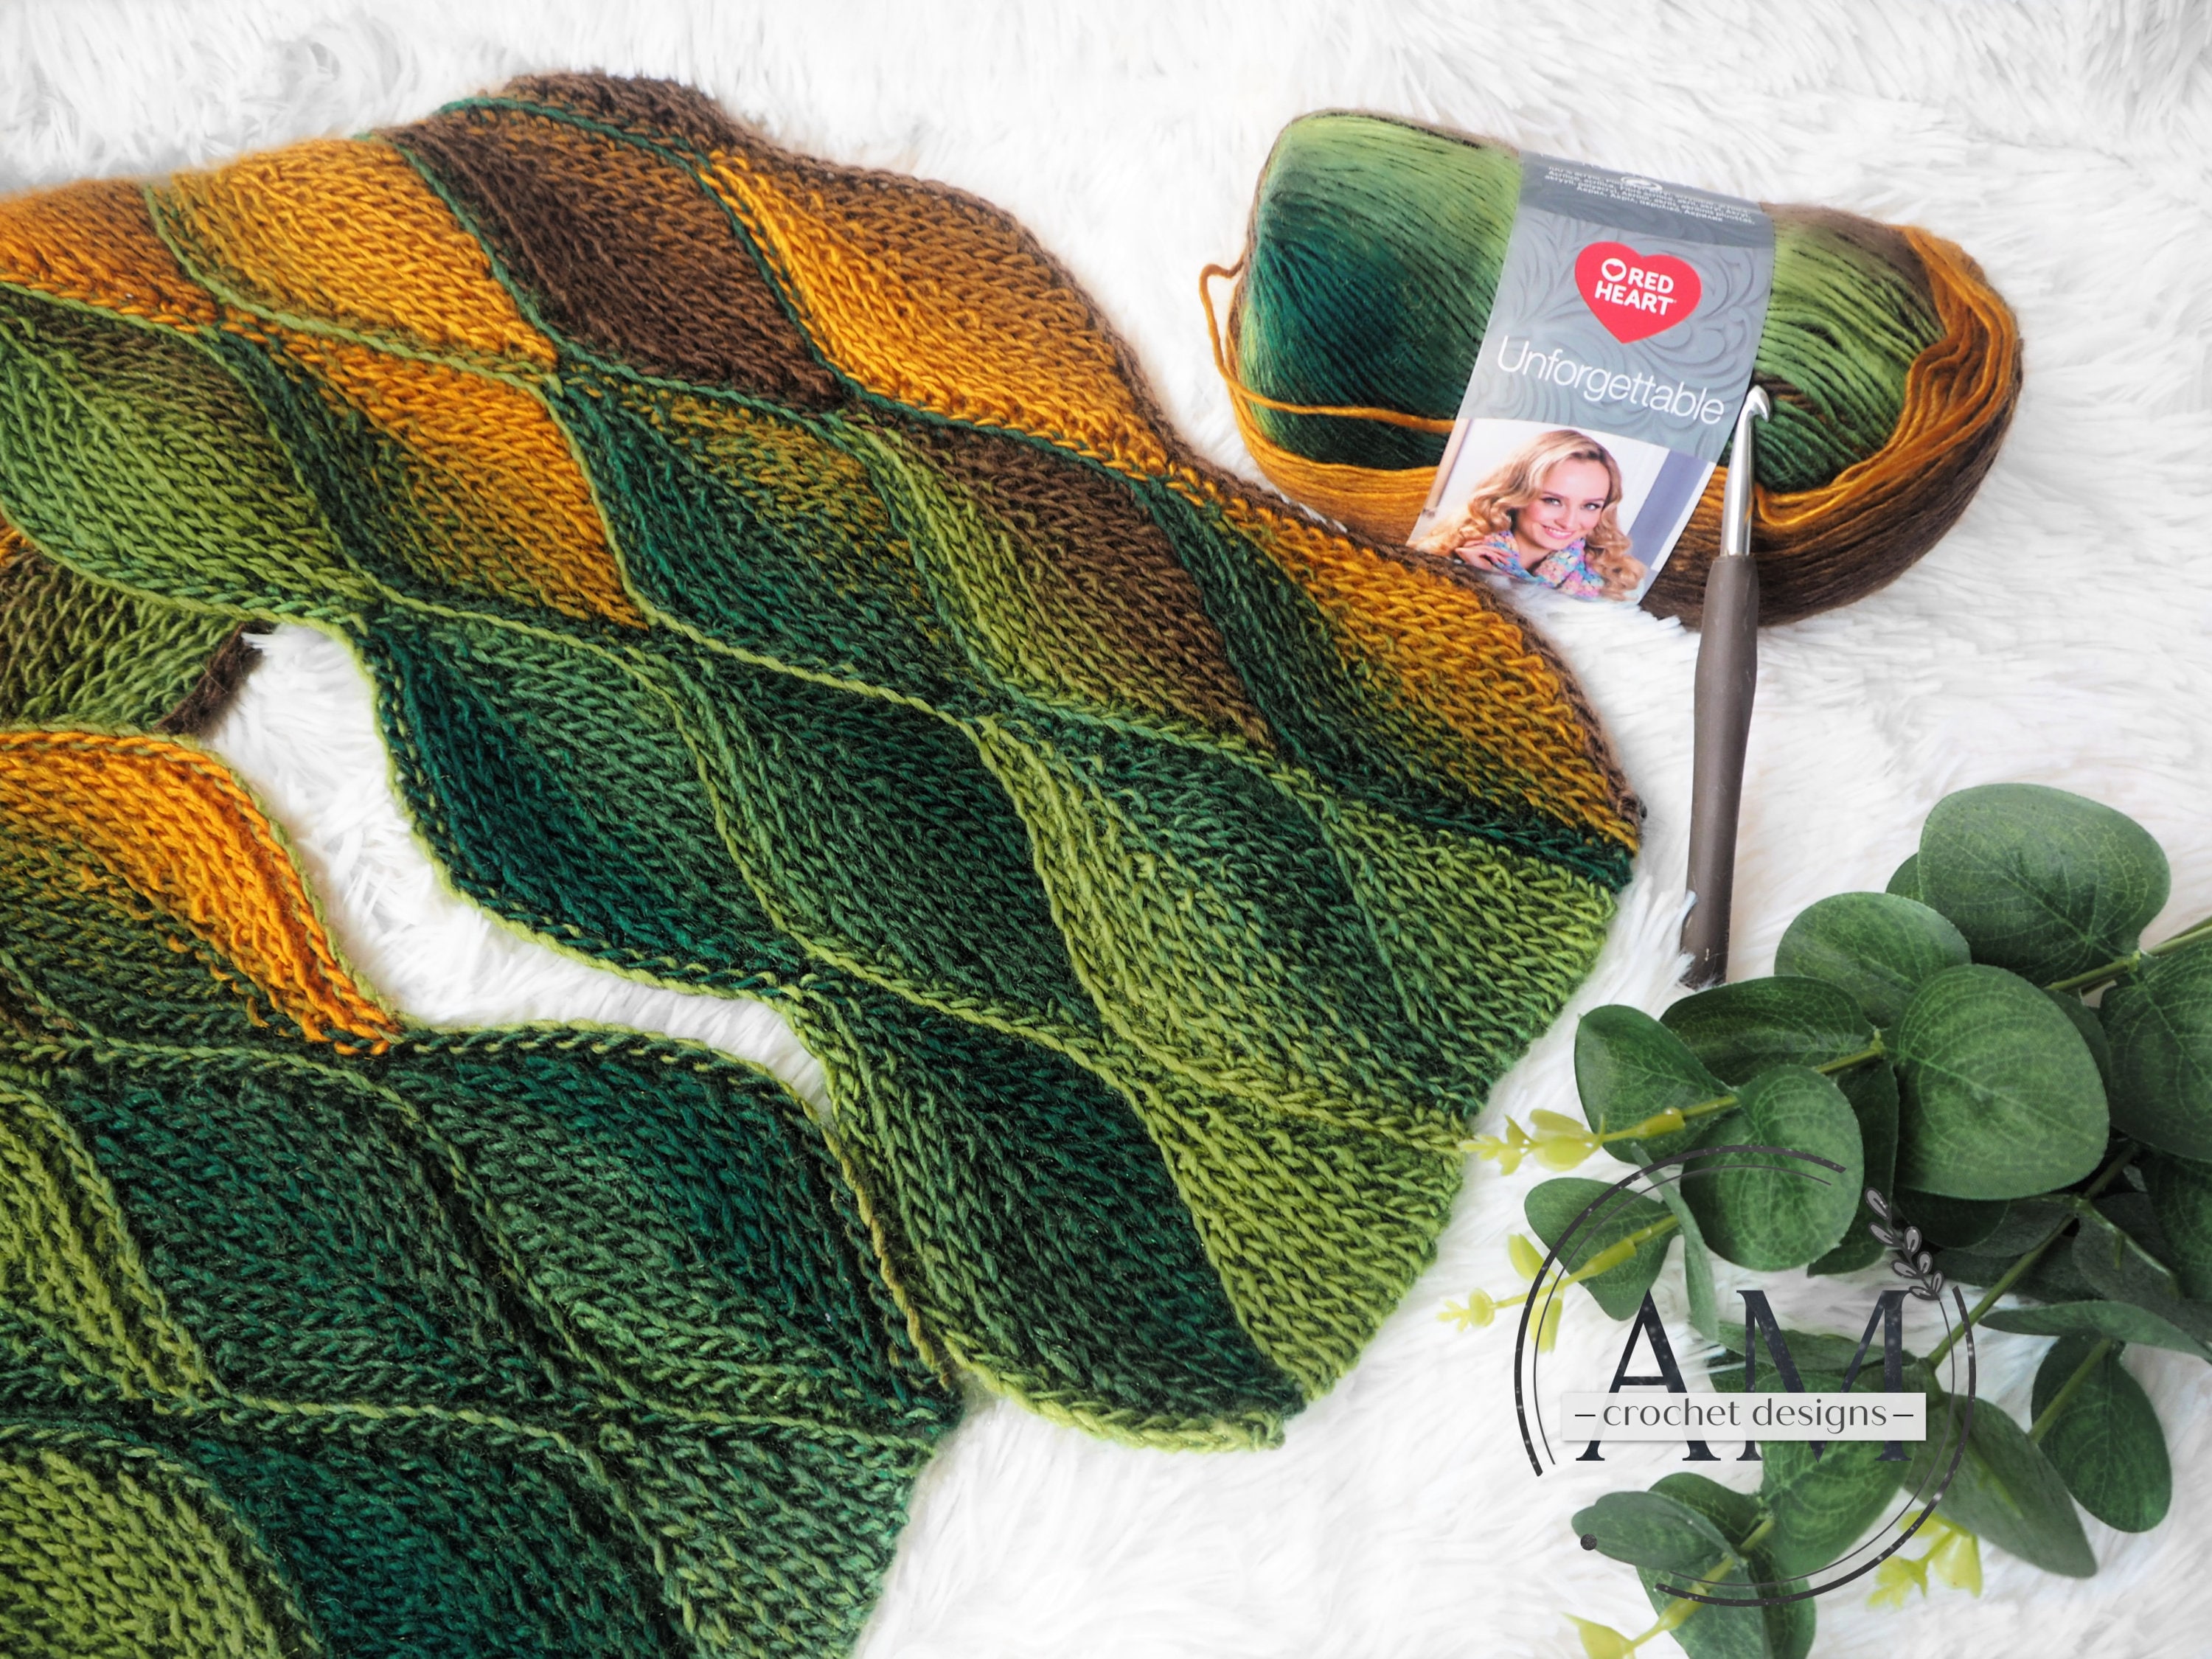 Knit-look Leafy Slouchy Beanie Crochet Pattern - Crochet & Knitting   Unique crochet blanket, Crochet leaf patterns, Slip stitch crochet